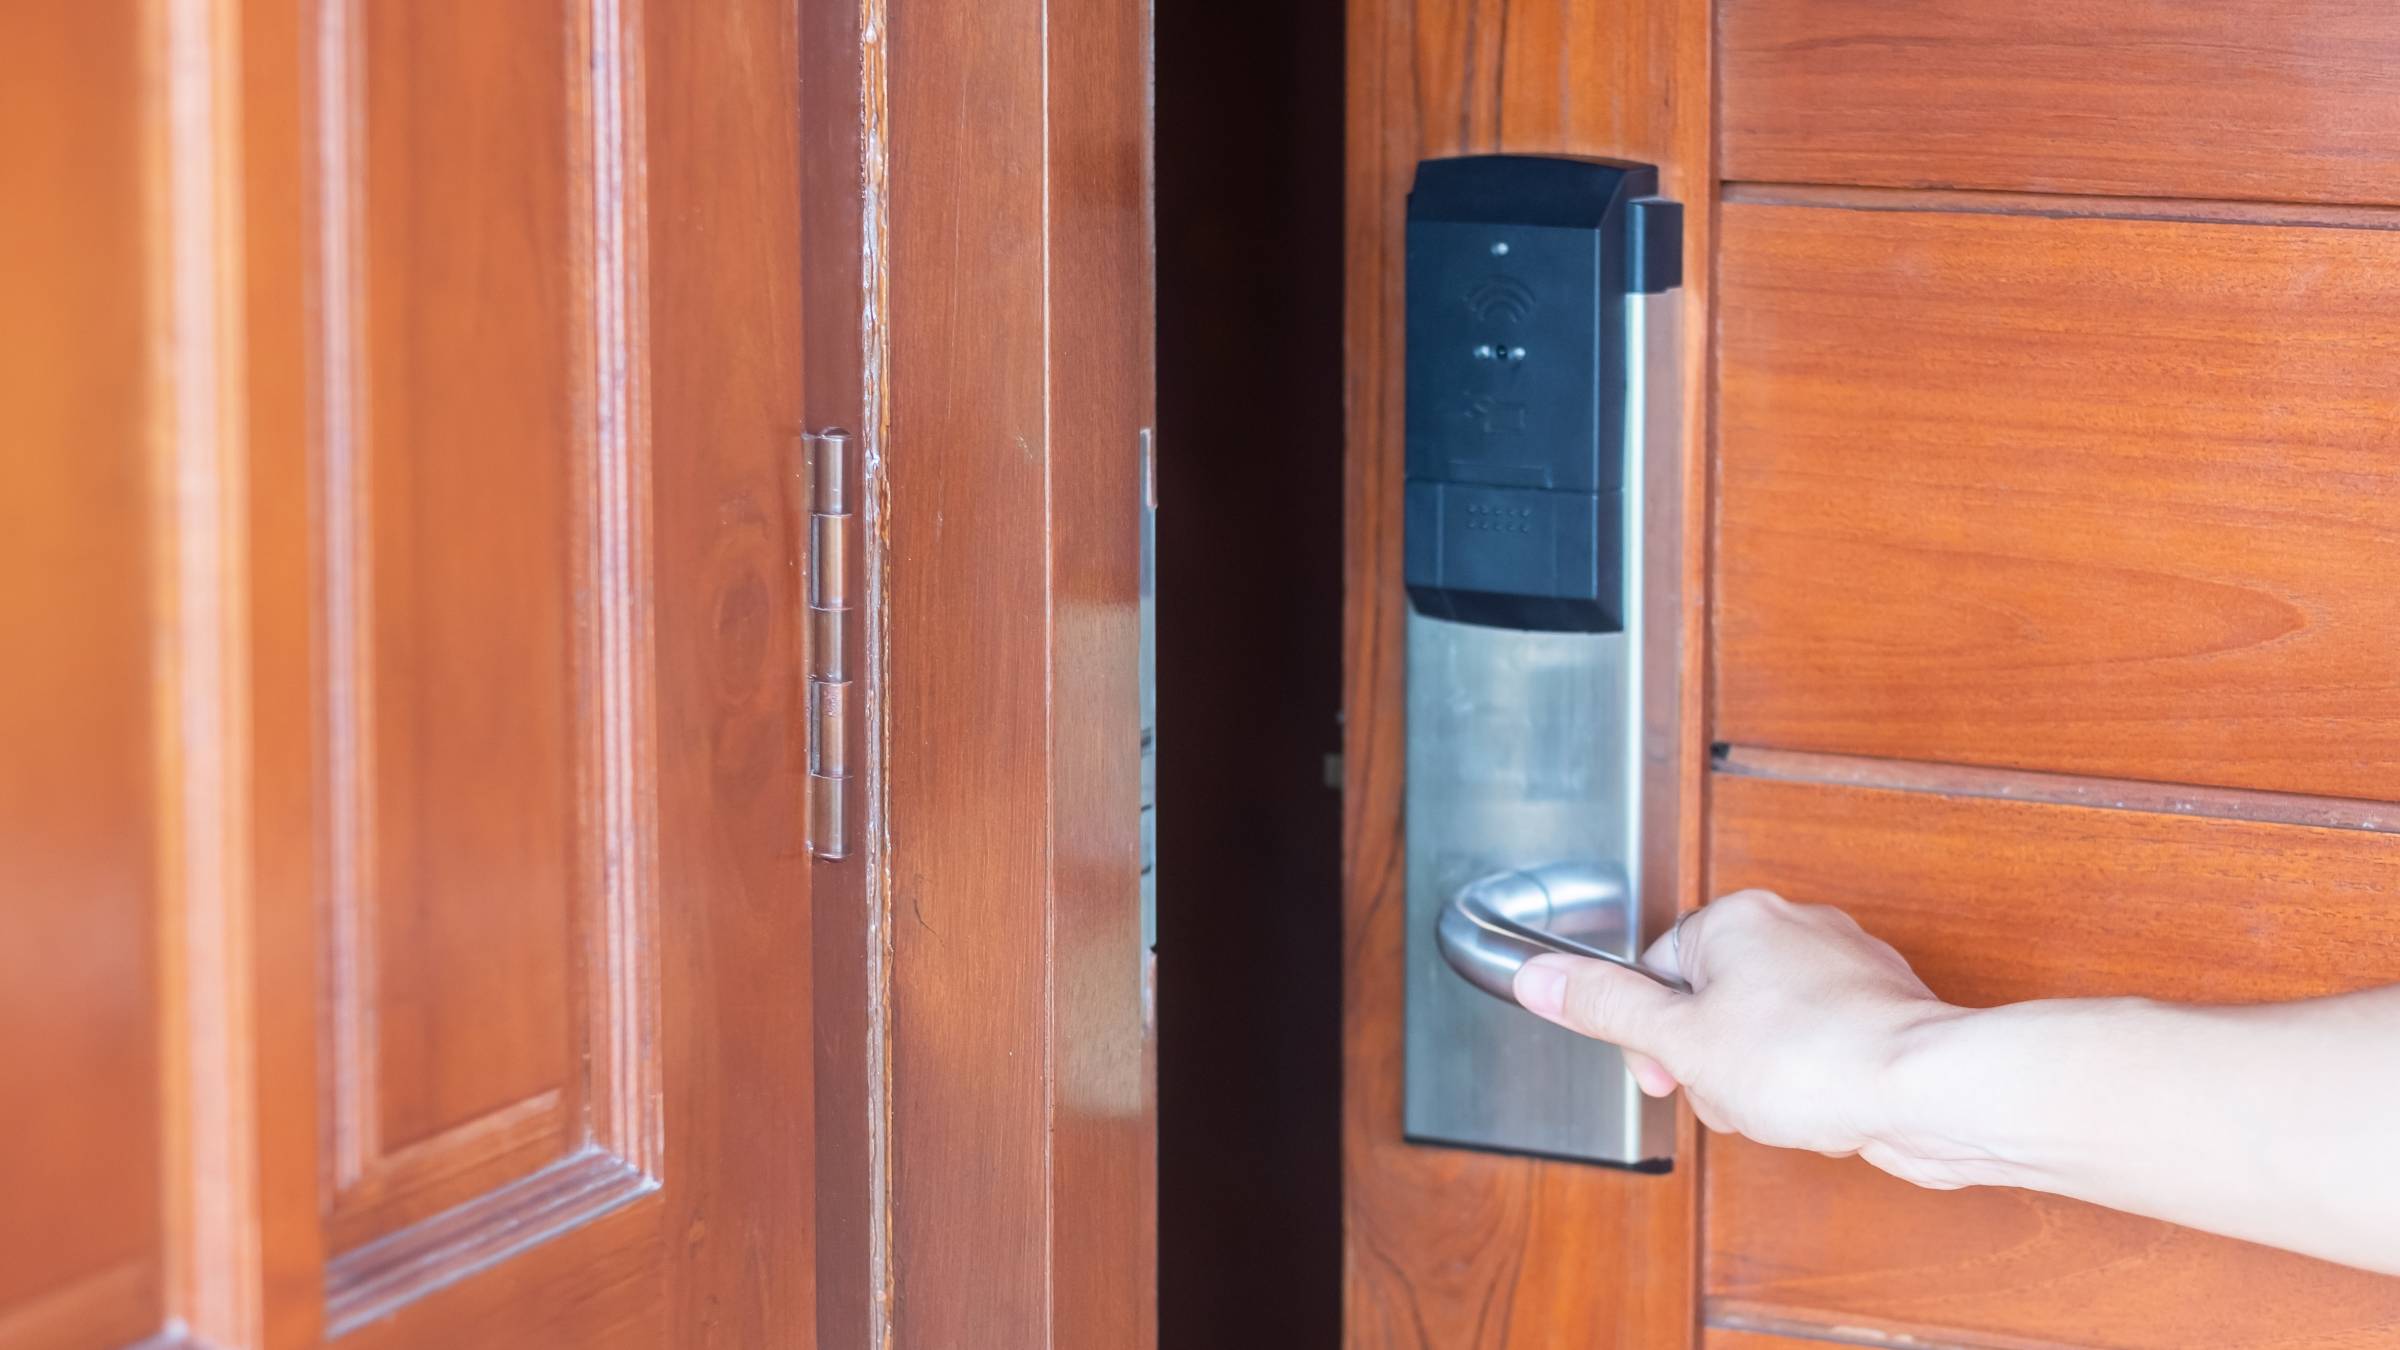 Smart Door Lock Full Installation Service